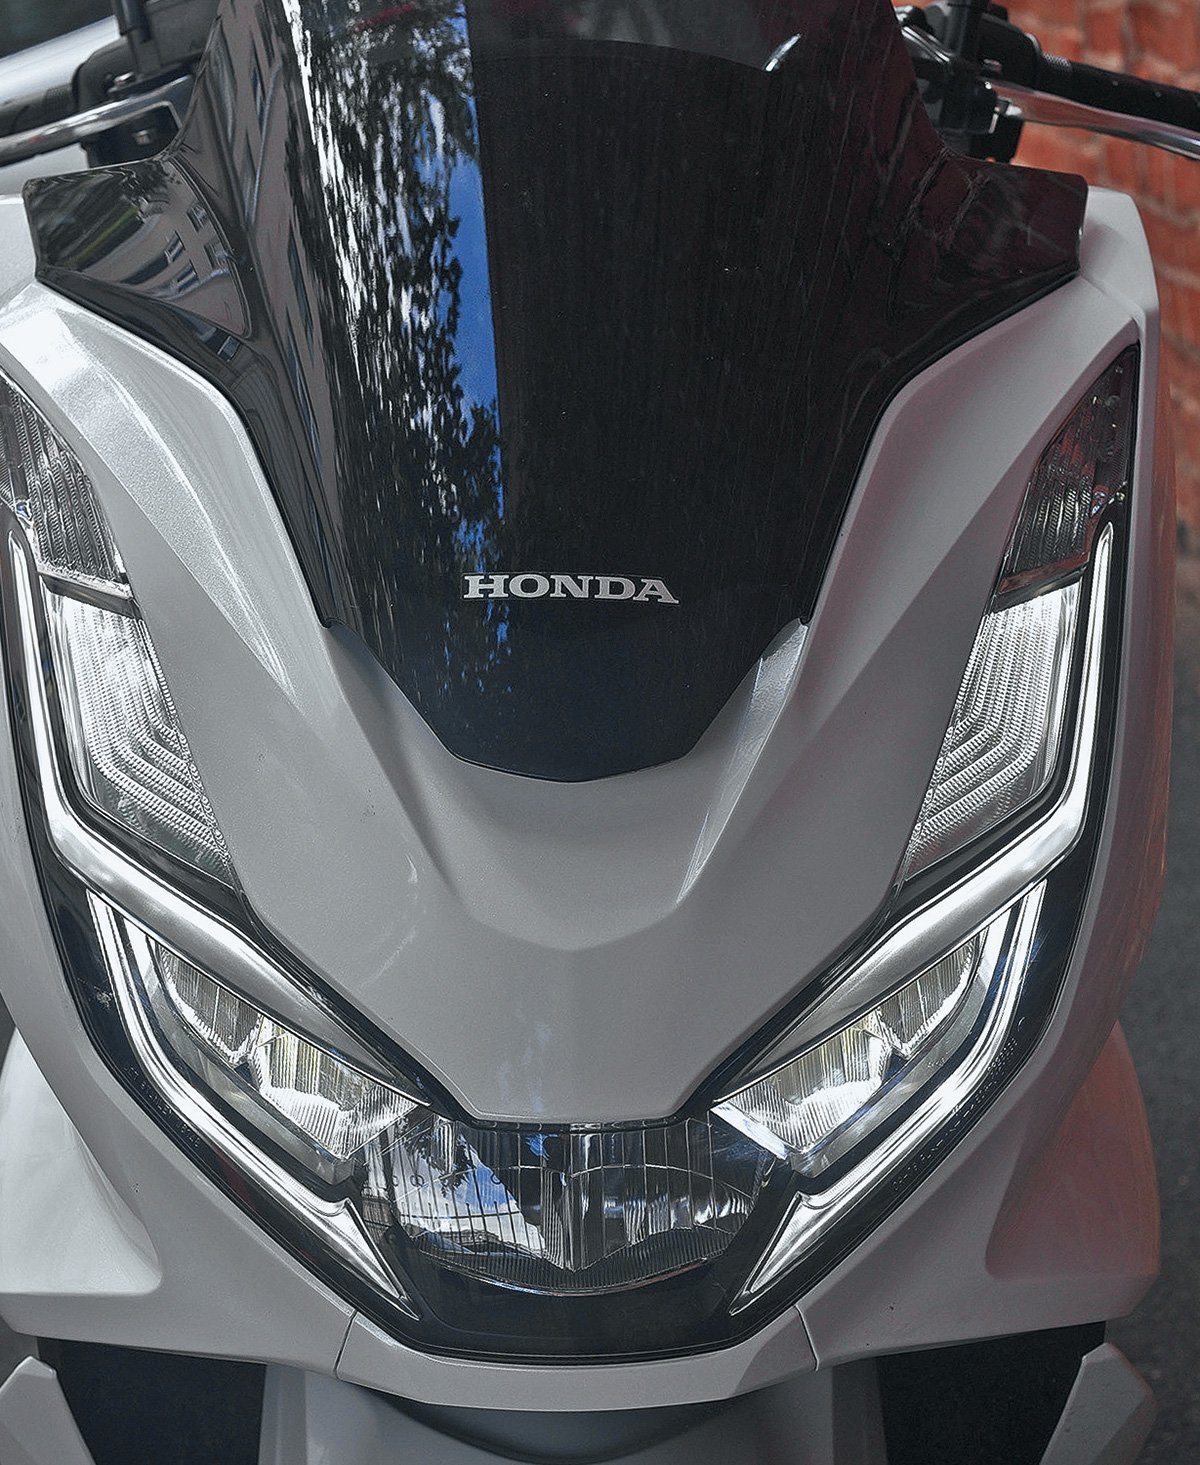 Как ксерокс, памперс и джип: почему во Вьетнаме все скутеры называют Хонда